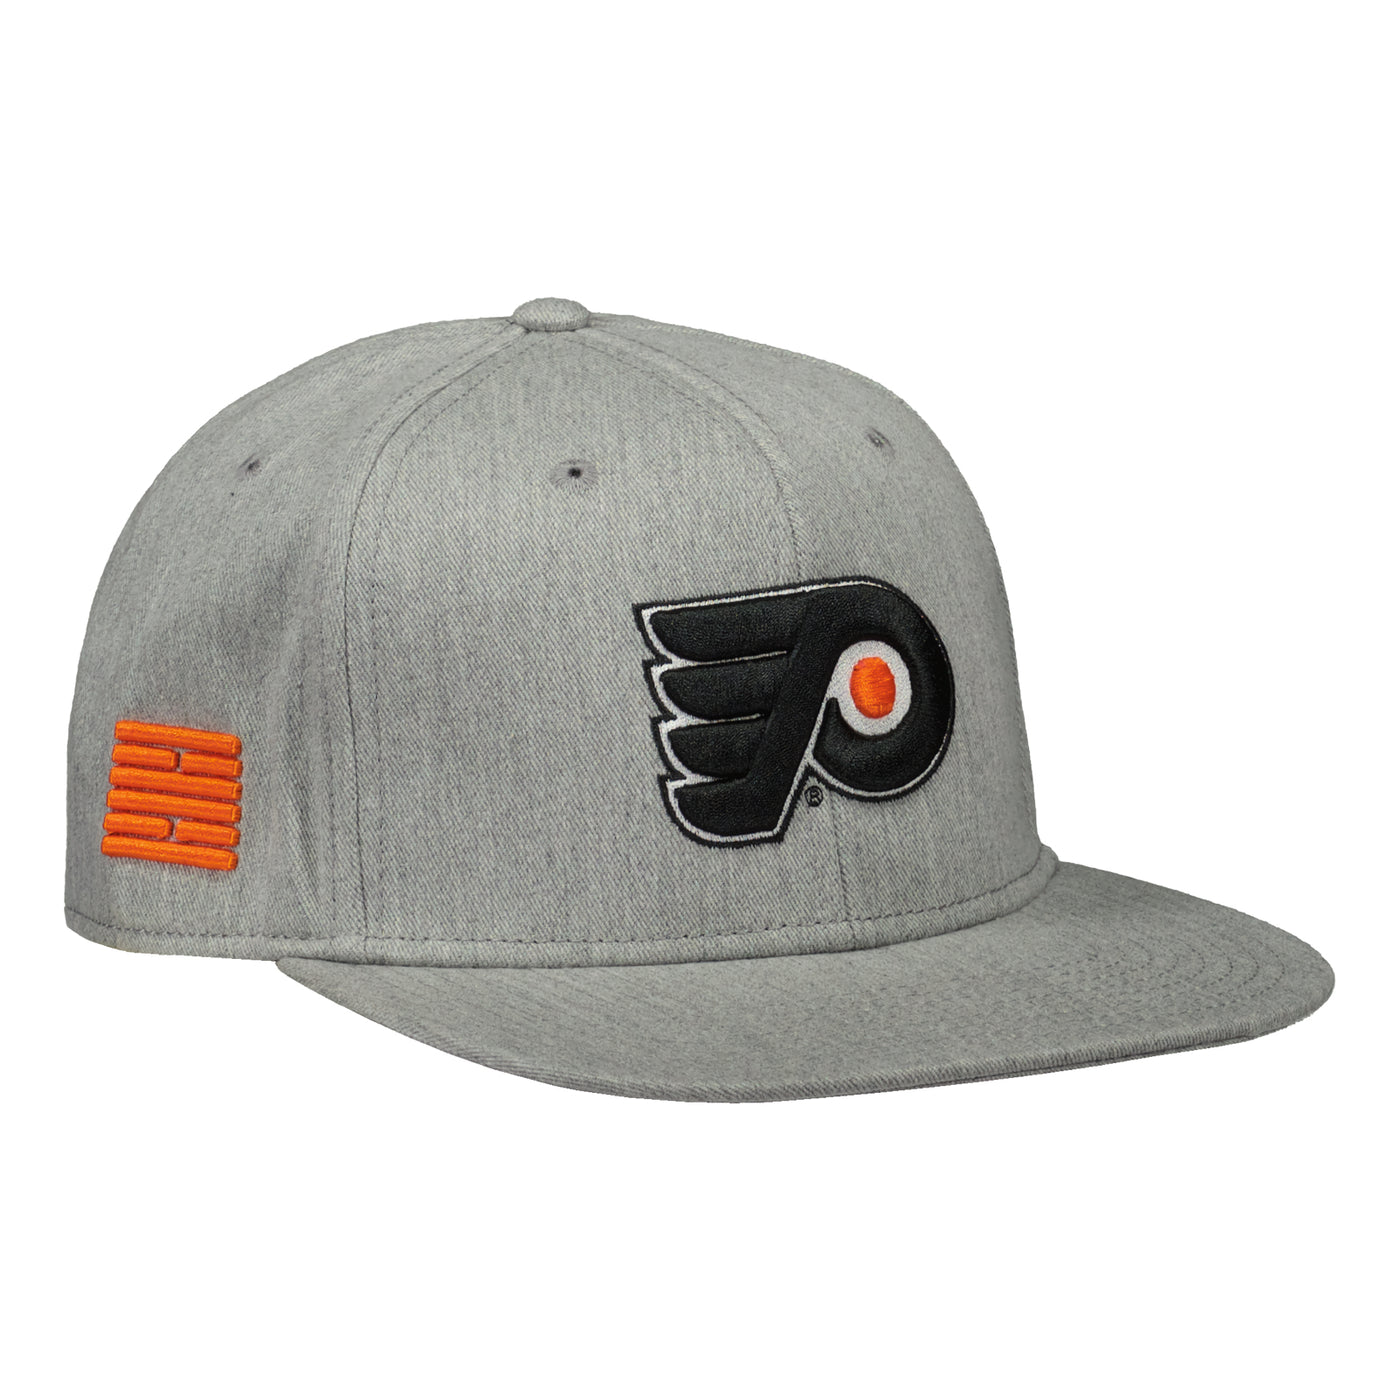 Flyers team snapback cap